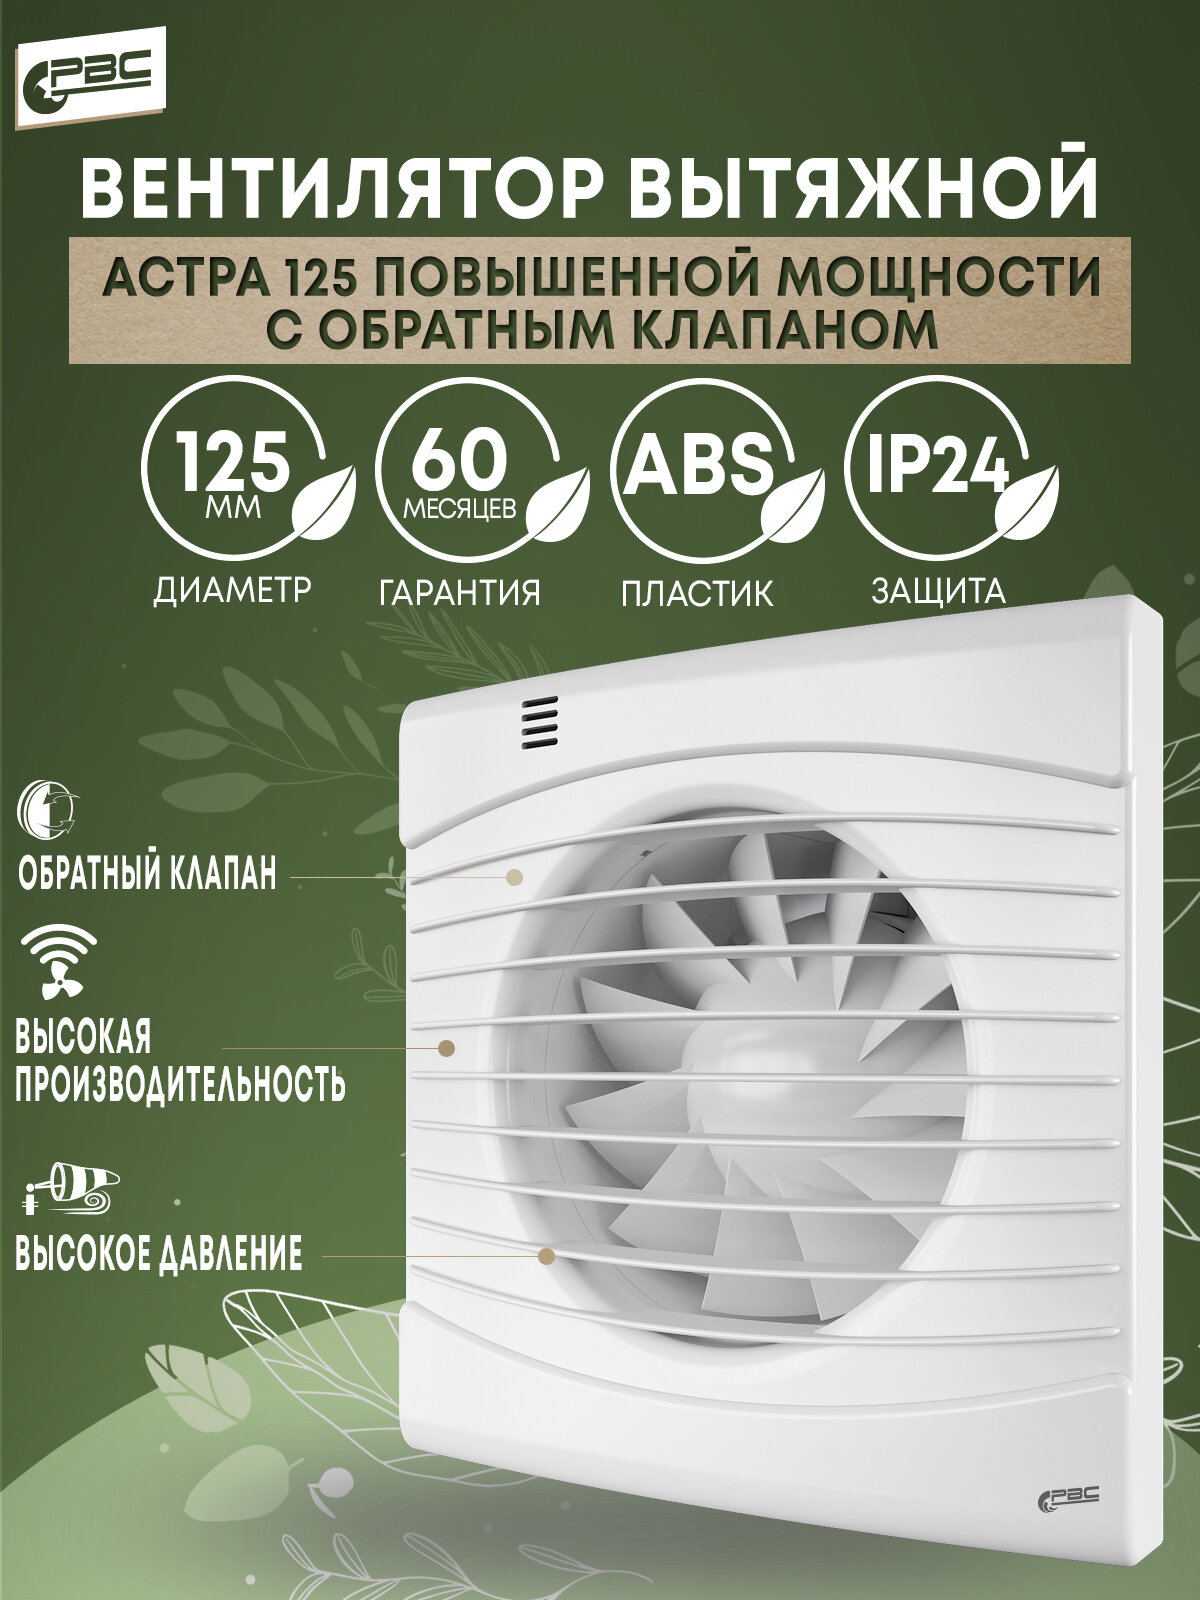 Вентилятор повышенной мощности с обратным клапаном РВС Астра 125, 23 Вт, 41 дБ, 228 м3/ч - фотография № 1